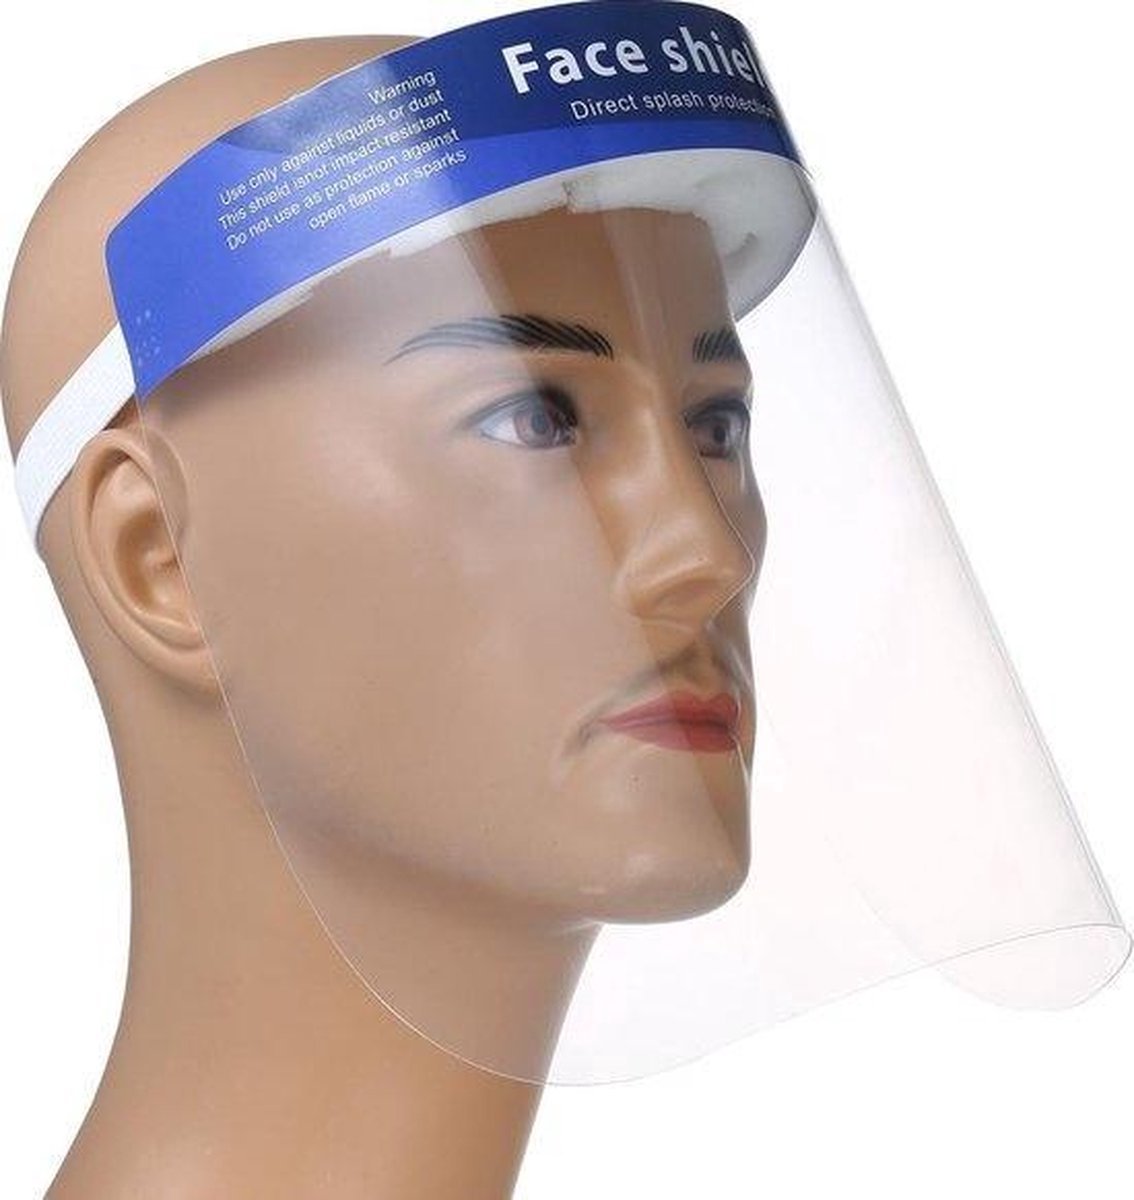 Spatmasker Gezichtscherm - Beschermkap voor gezicht - Doorzichtig - 1 Stuks - Face Shield